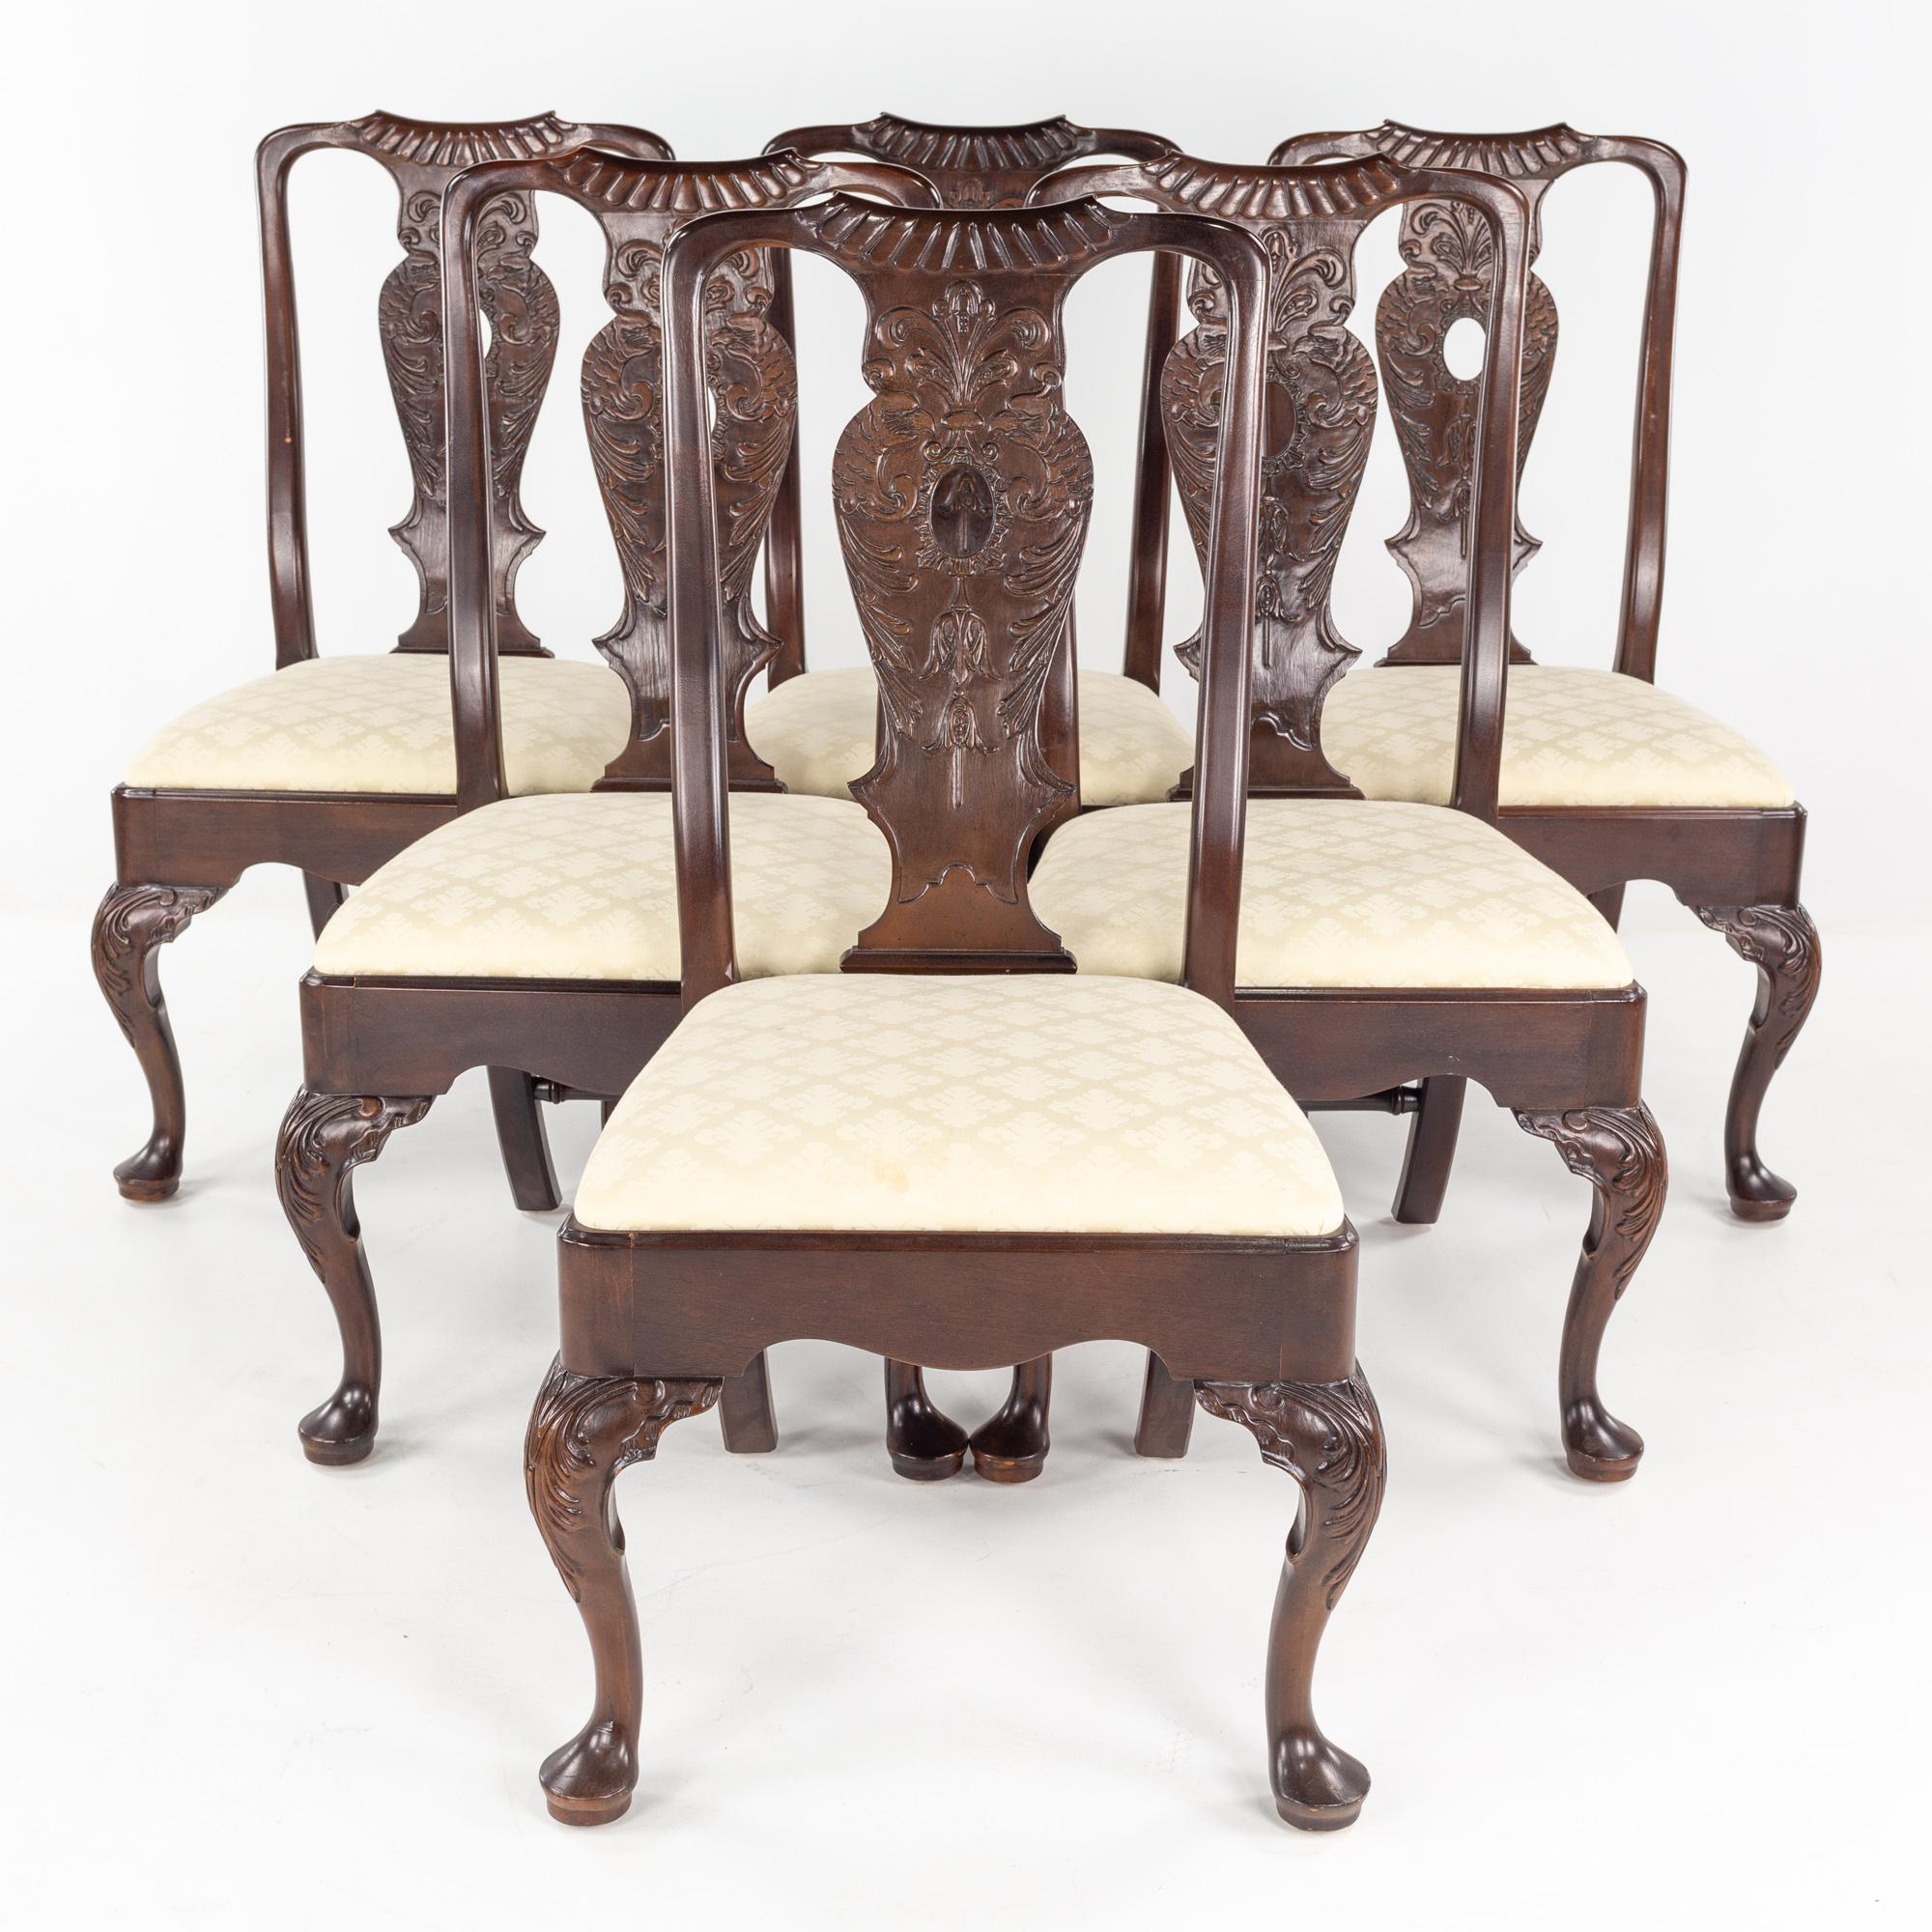 Henredon Aston Court Mahagoni Esszimmerstühle - 6er Set

Jeder Stuhl misst: 21 breit x 21 tief x 40 Zoll hoch, mit einer Sitzhöhe von 17 Zoll

Dieses Set ist in großartigem Vintage-Zustand mit kleinen Flecken, Dellen und Abnutzung.

Über